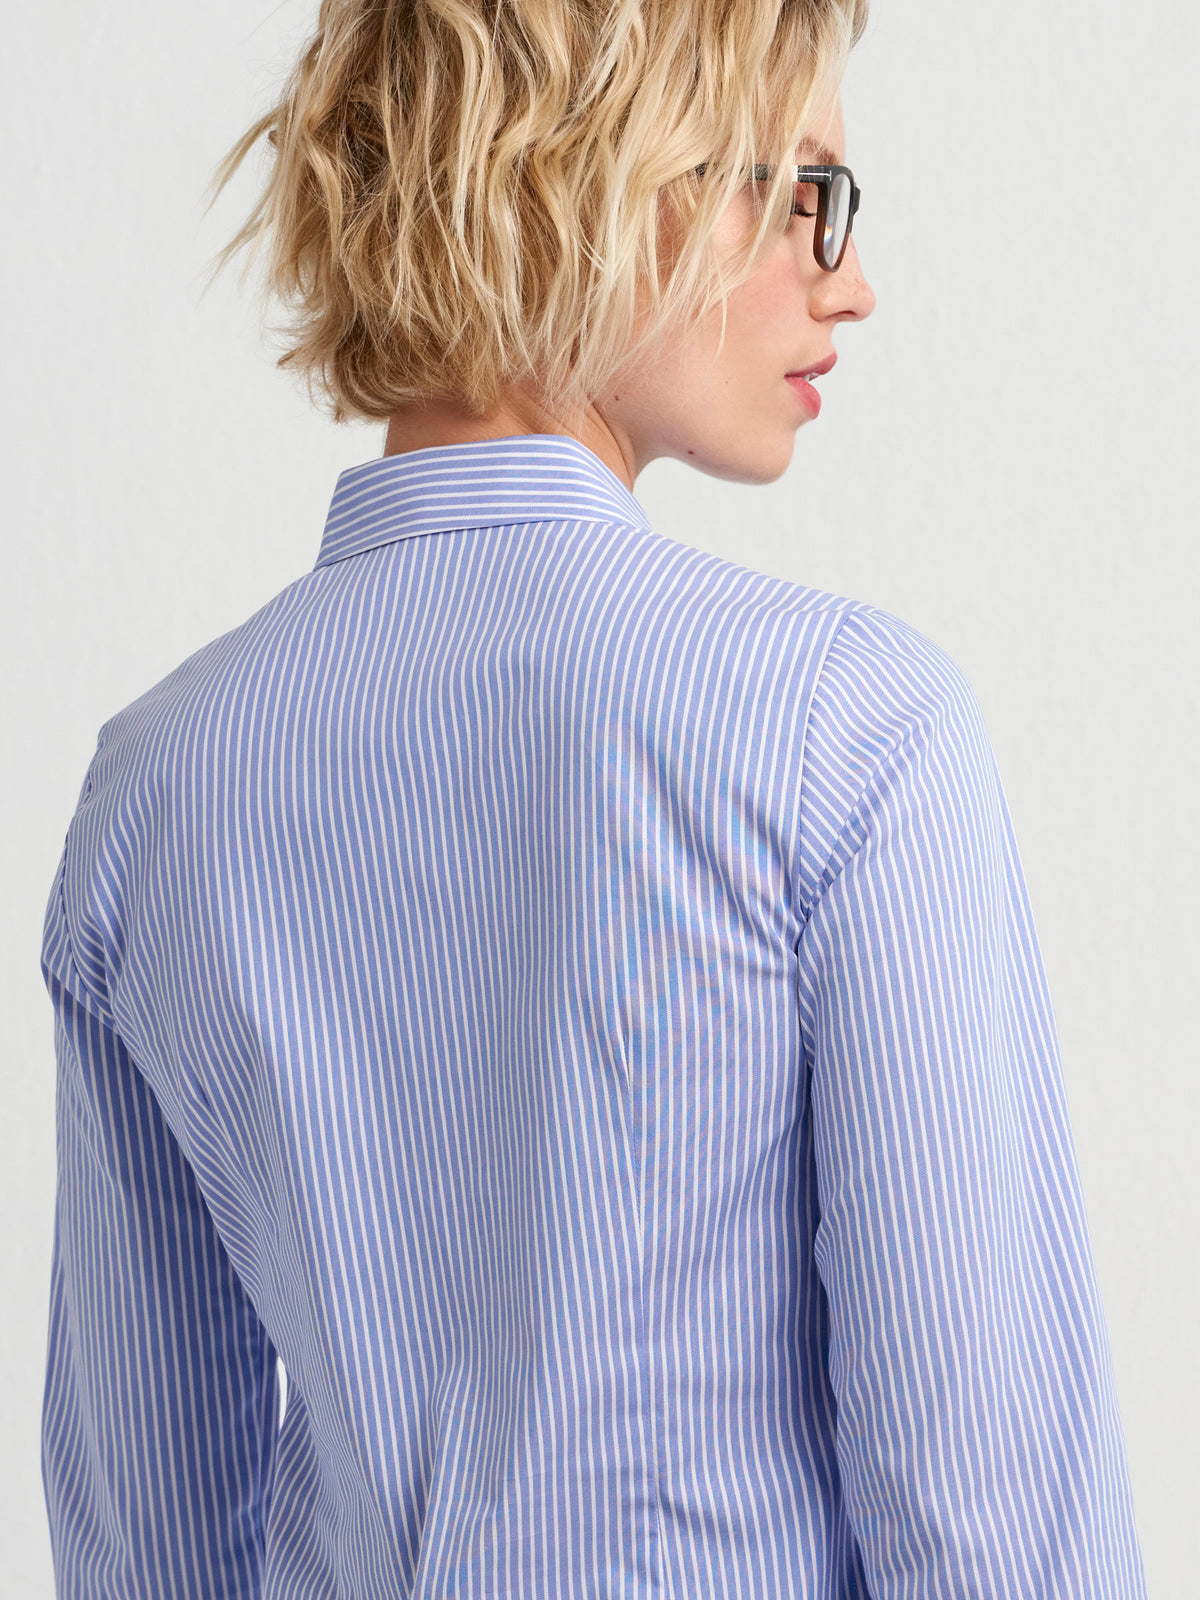 Karabo cotton shirt - blue stripe